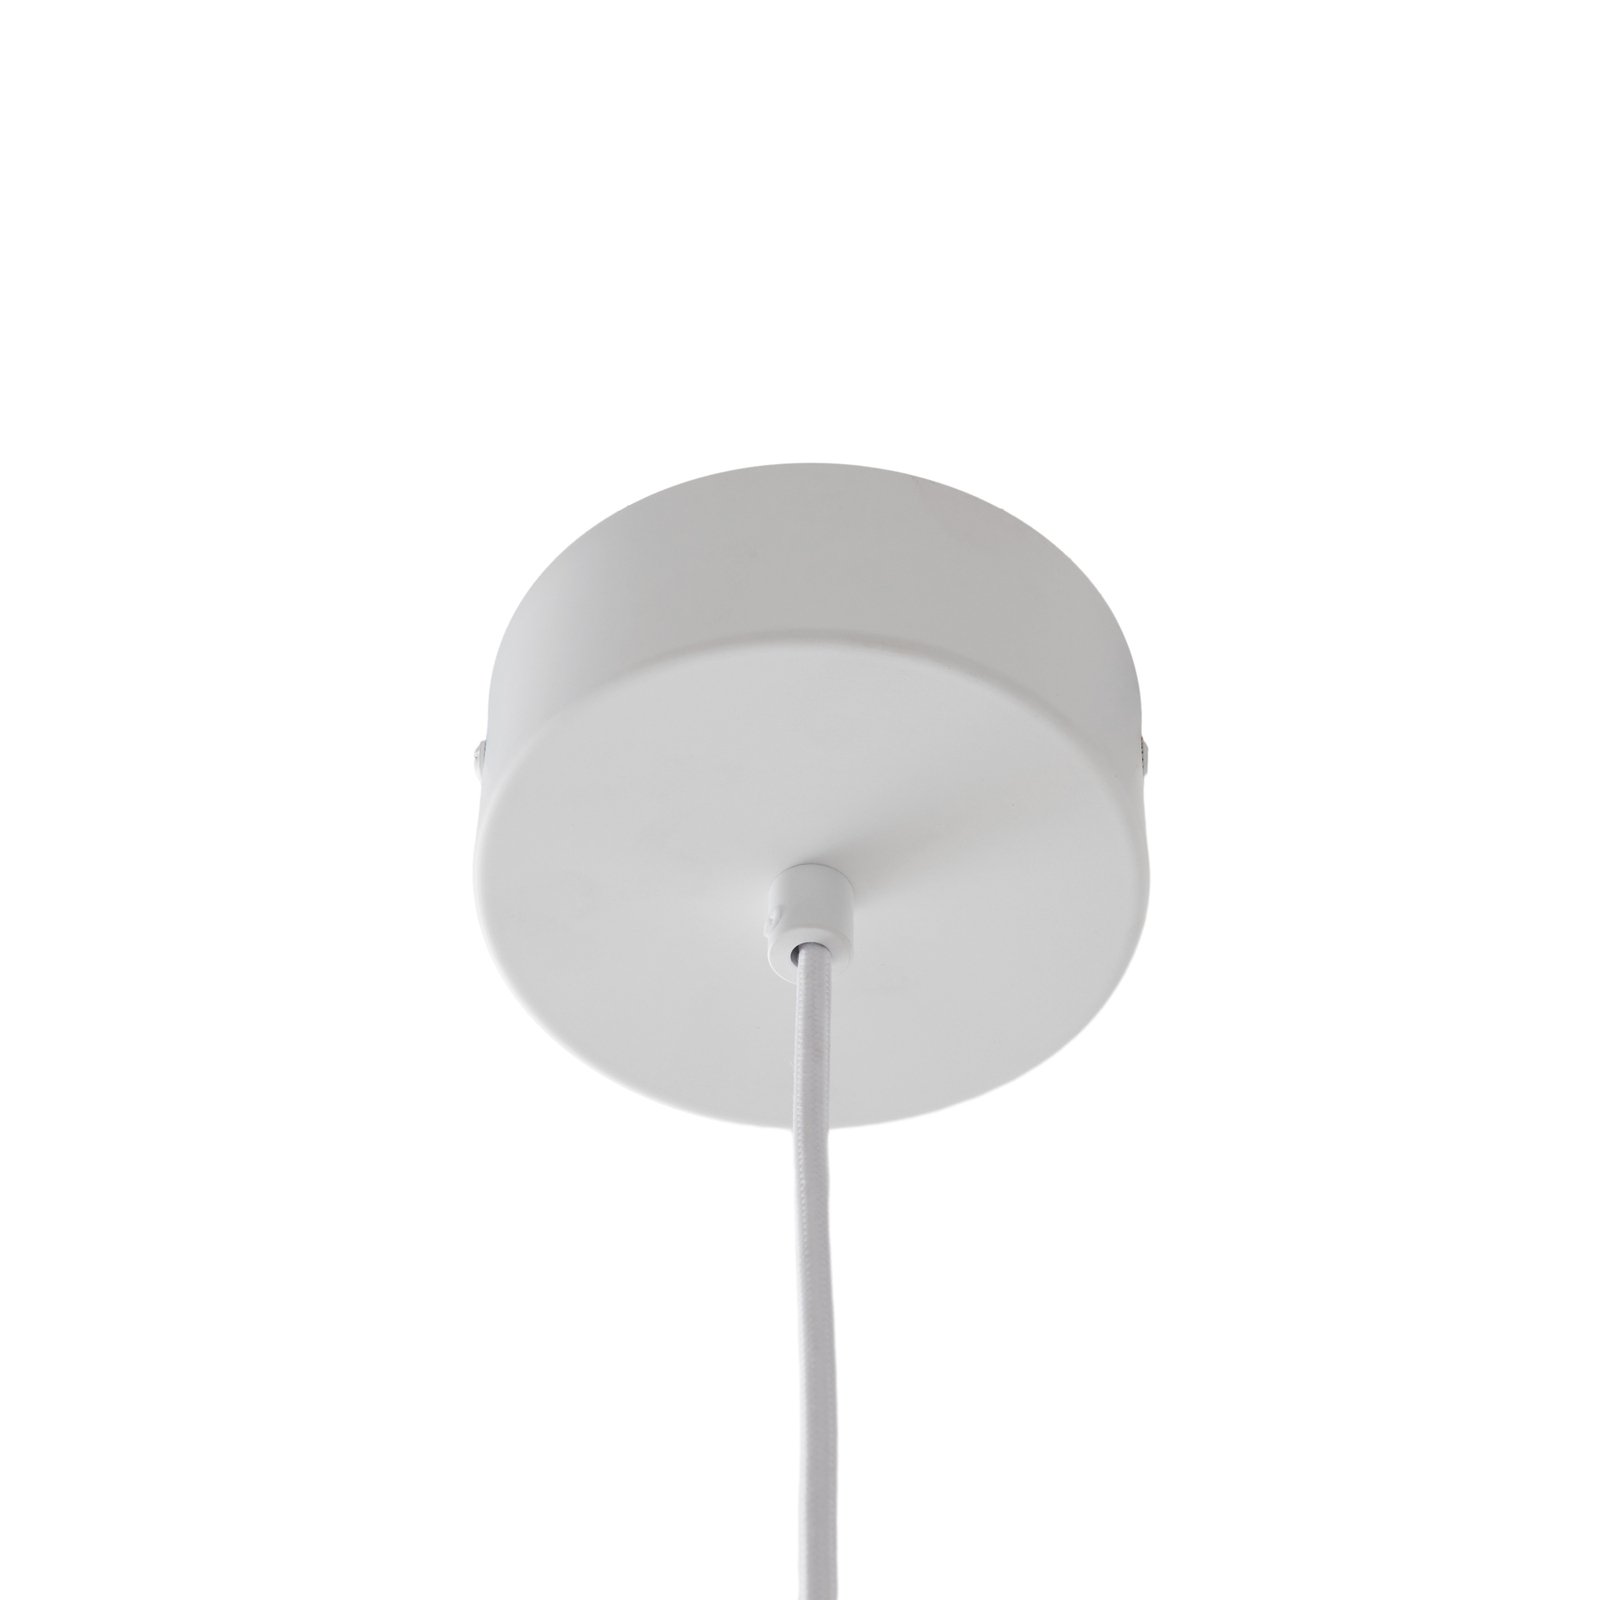 Lucande Mynoria LED pendant light, white